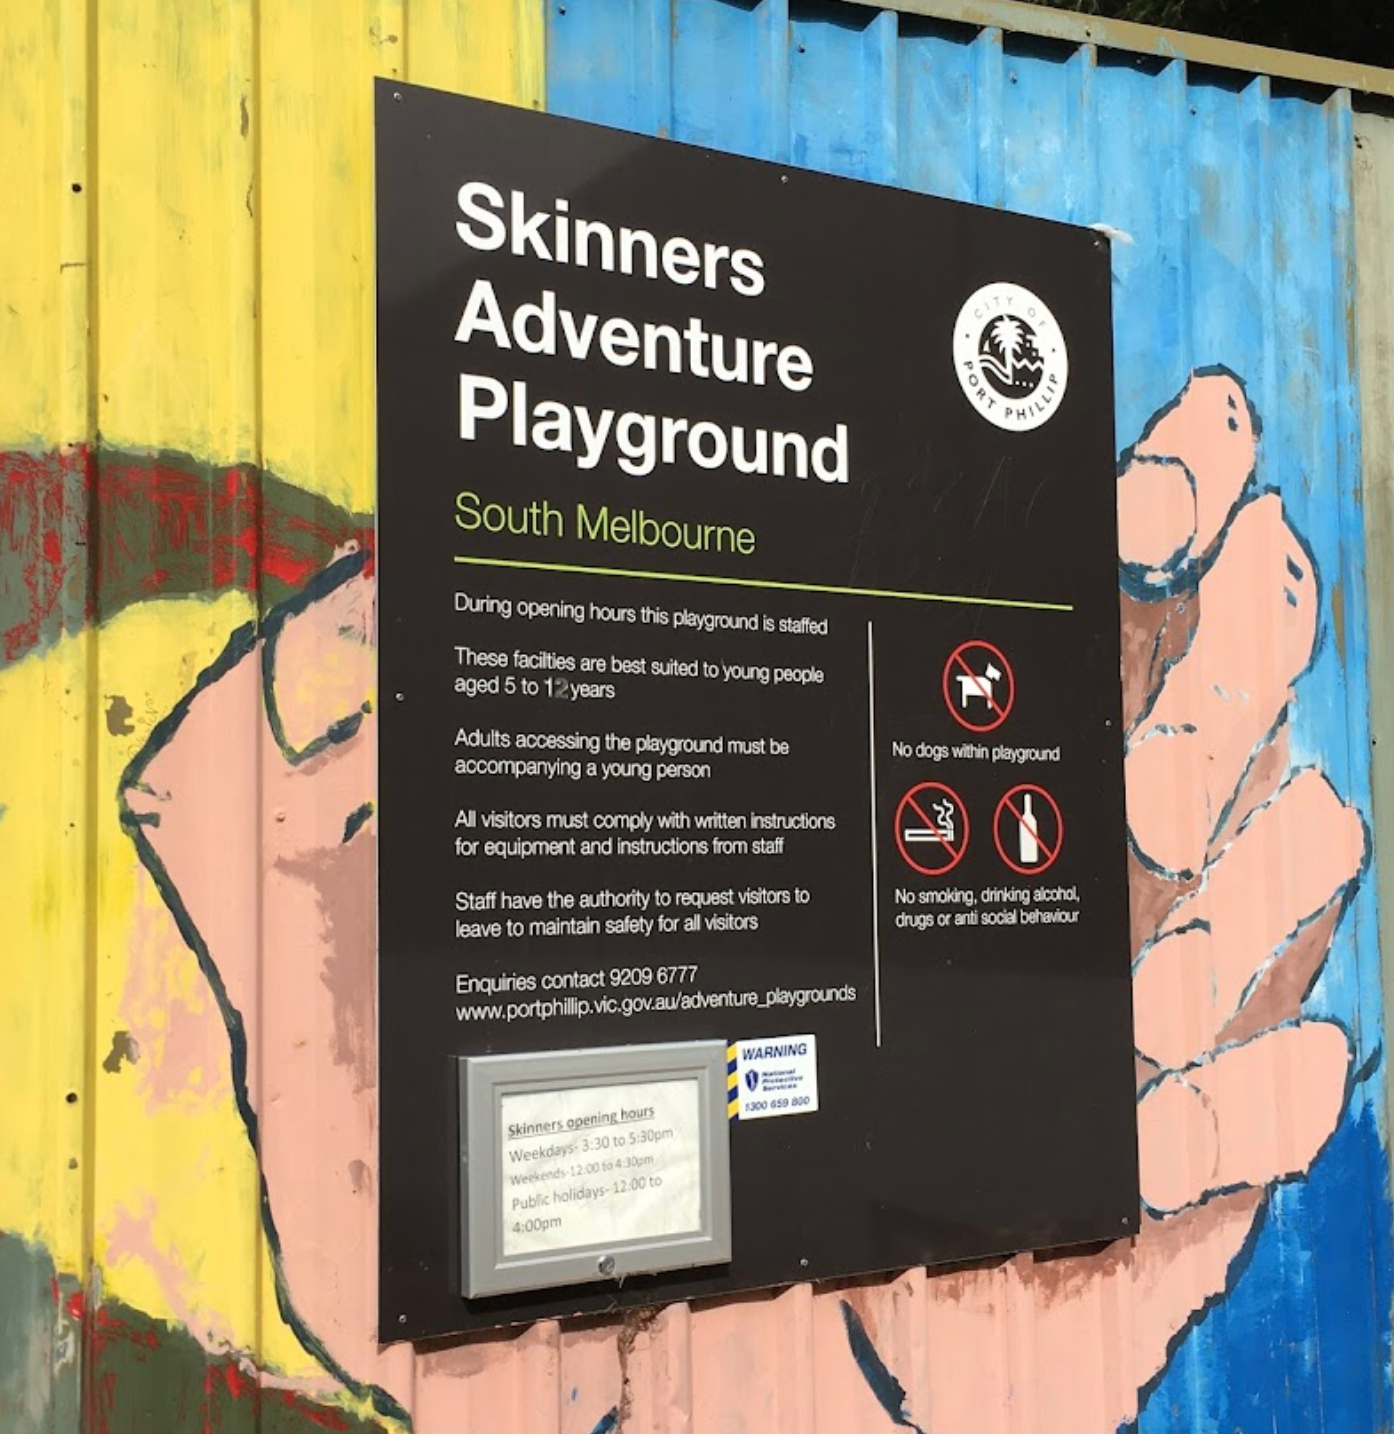 Skinners Adventure Playground